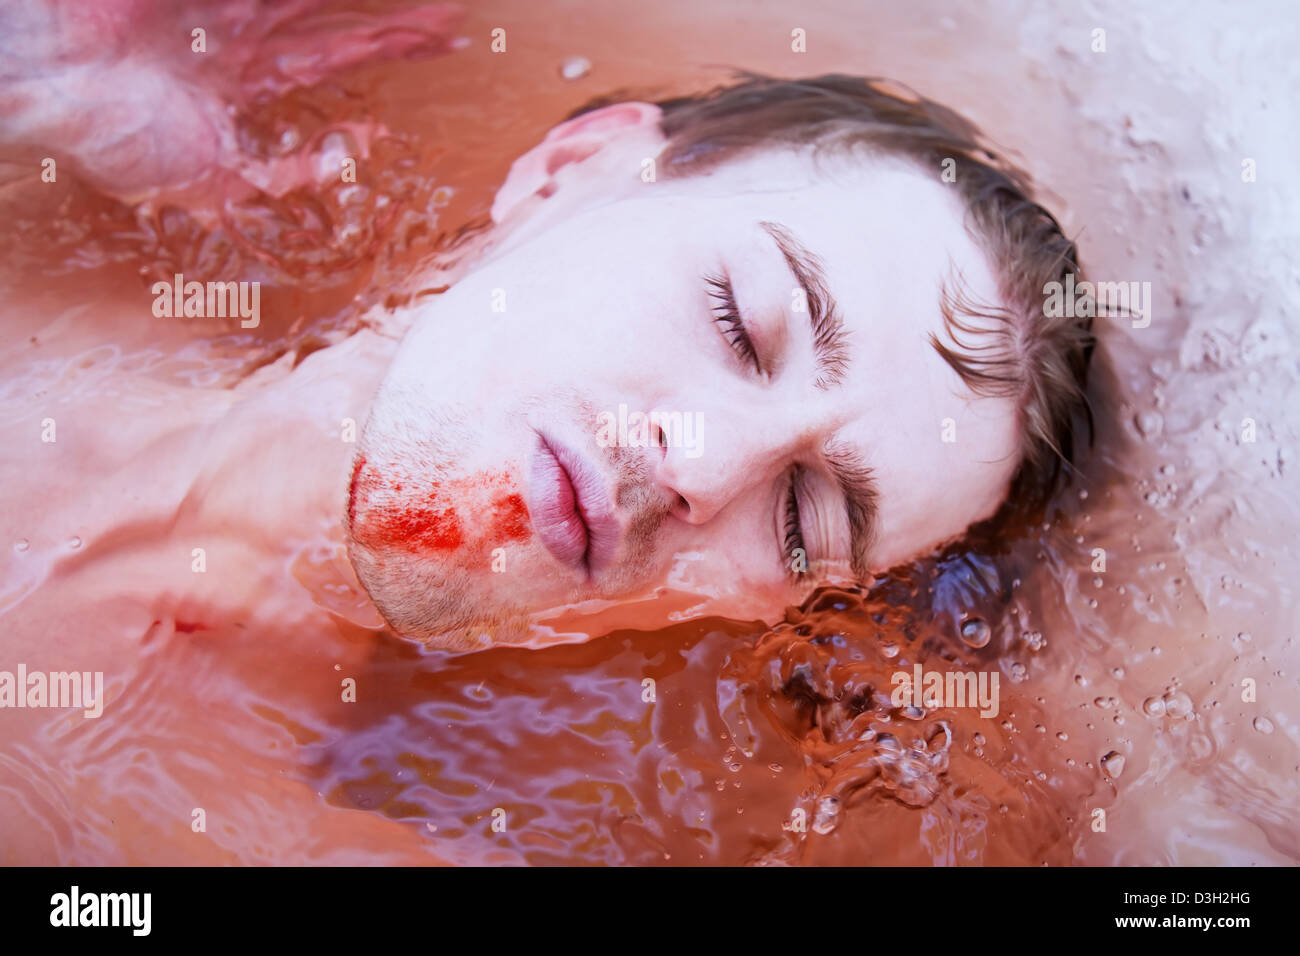 Dead Man's face avec une plaie sanglante dans l'eau libre Banque D'Images